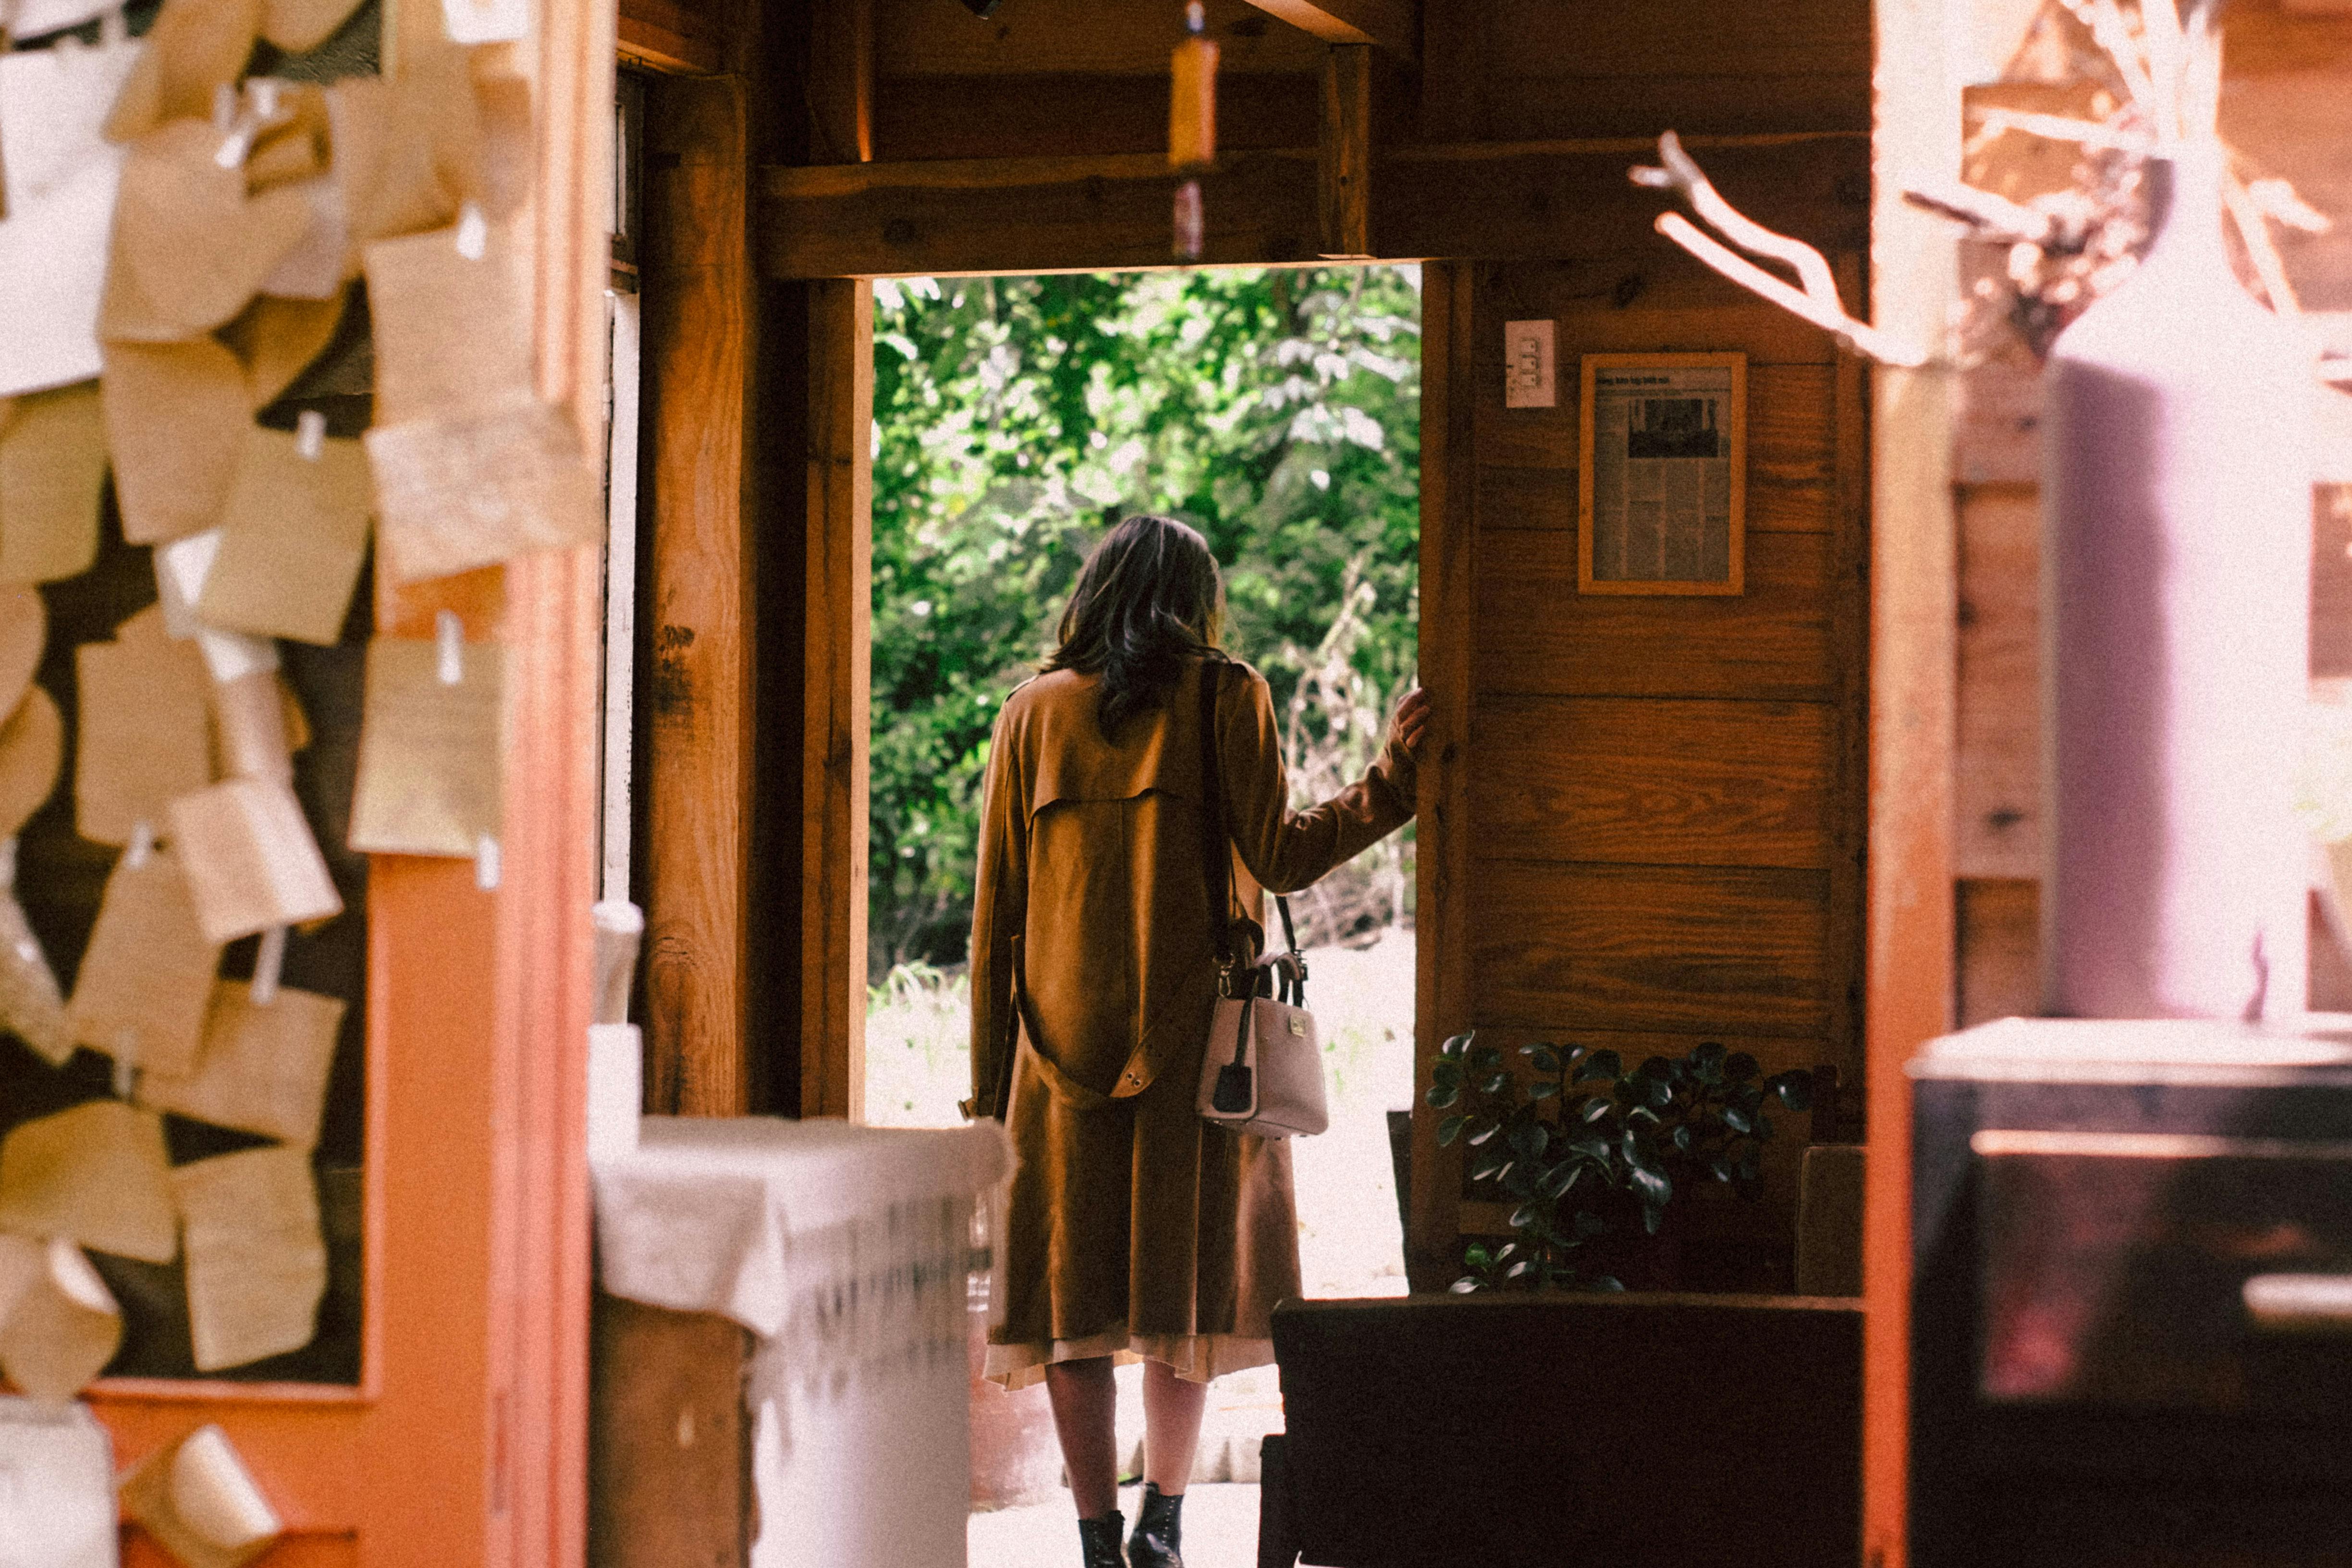 A woman standing near an open door | Source: Pexels